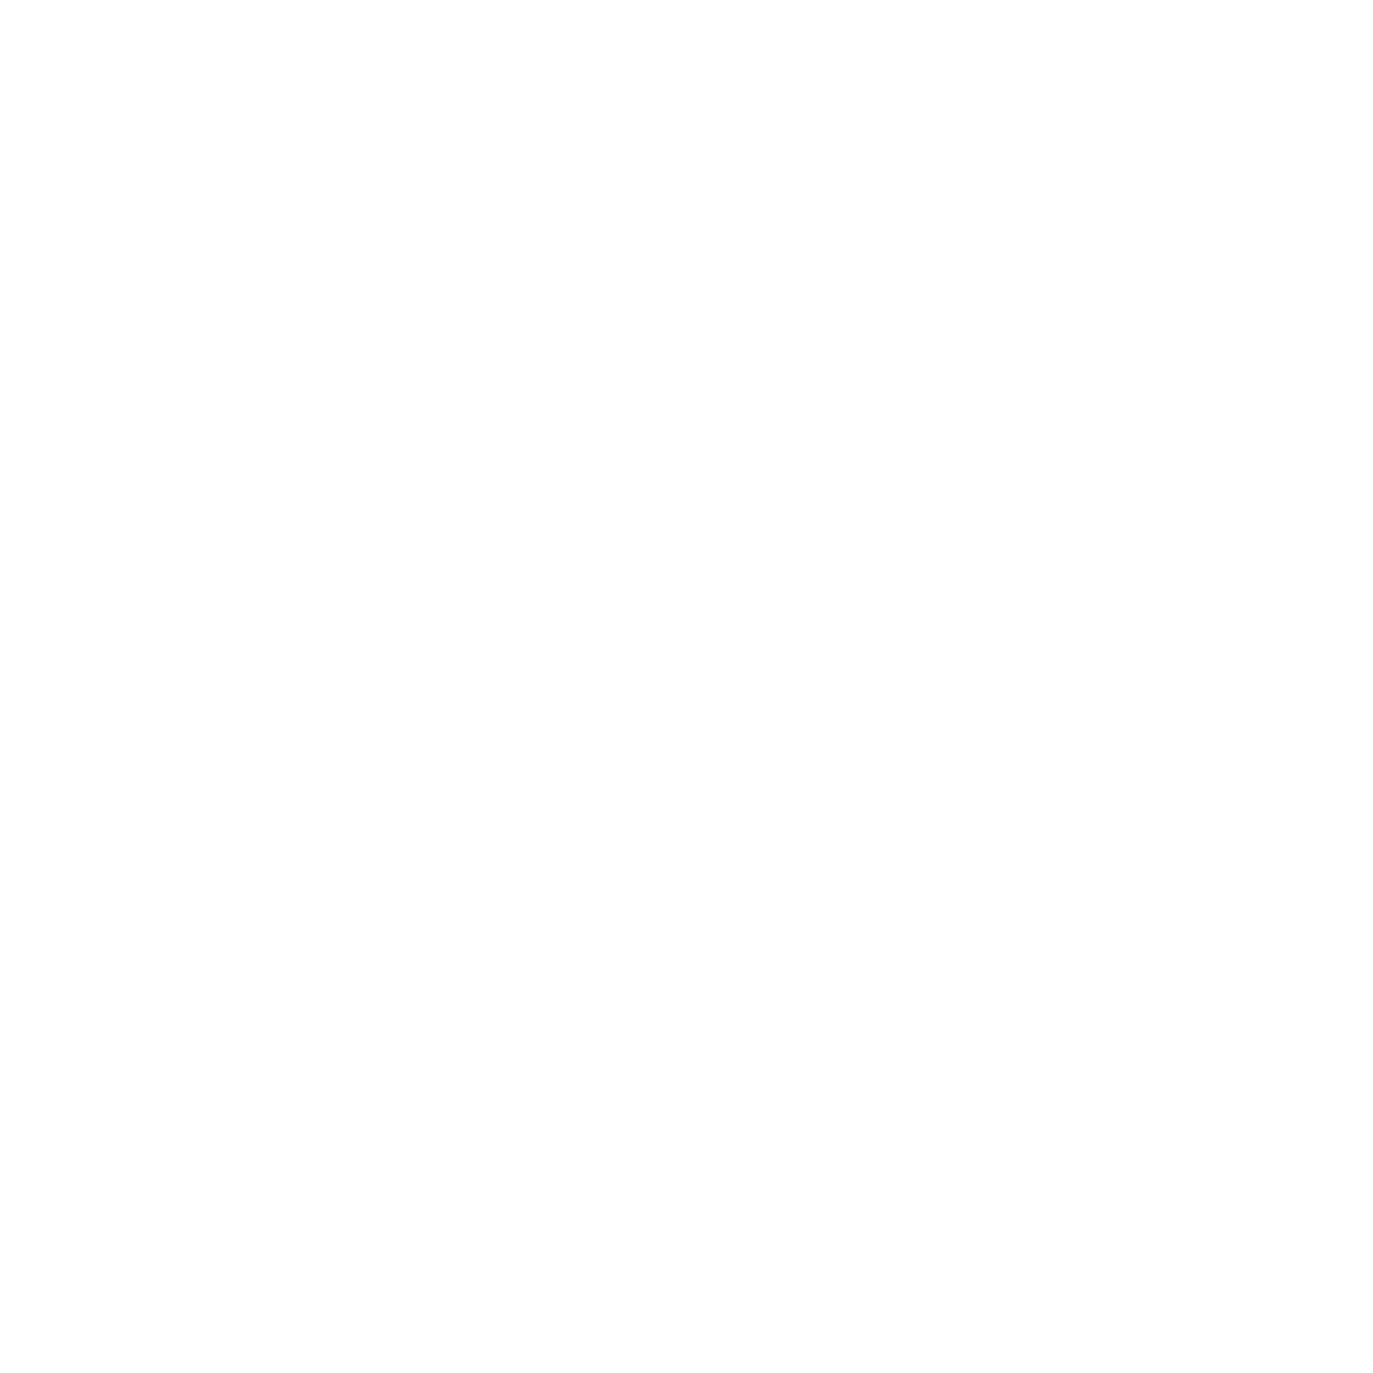 w69slot - HacksawGaming